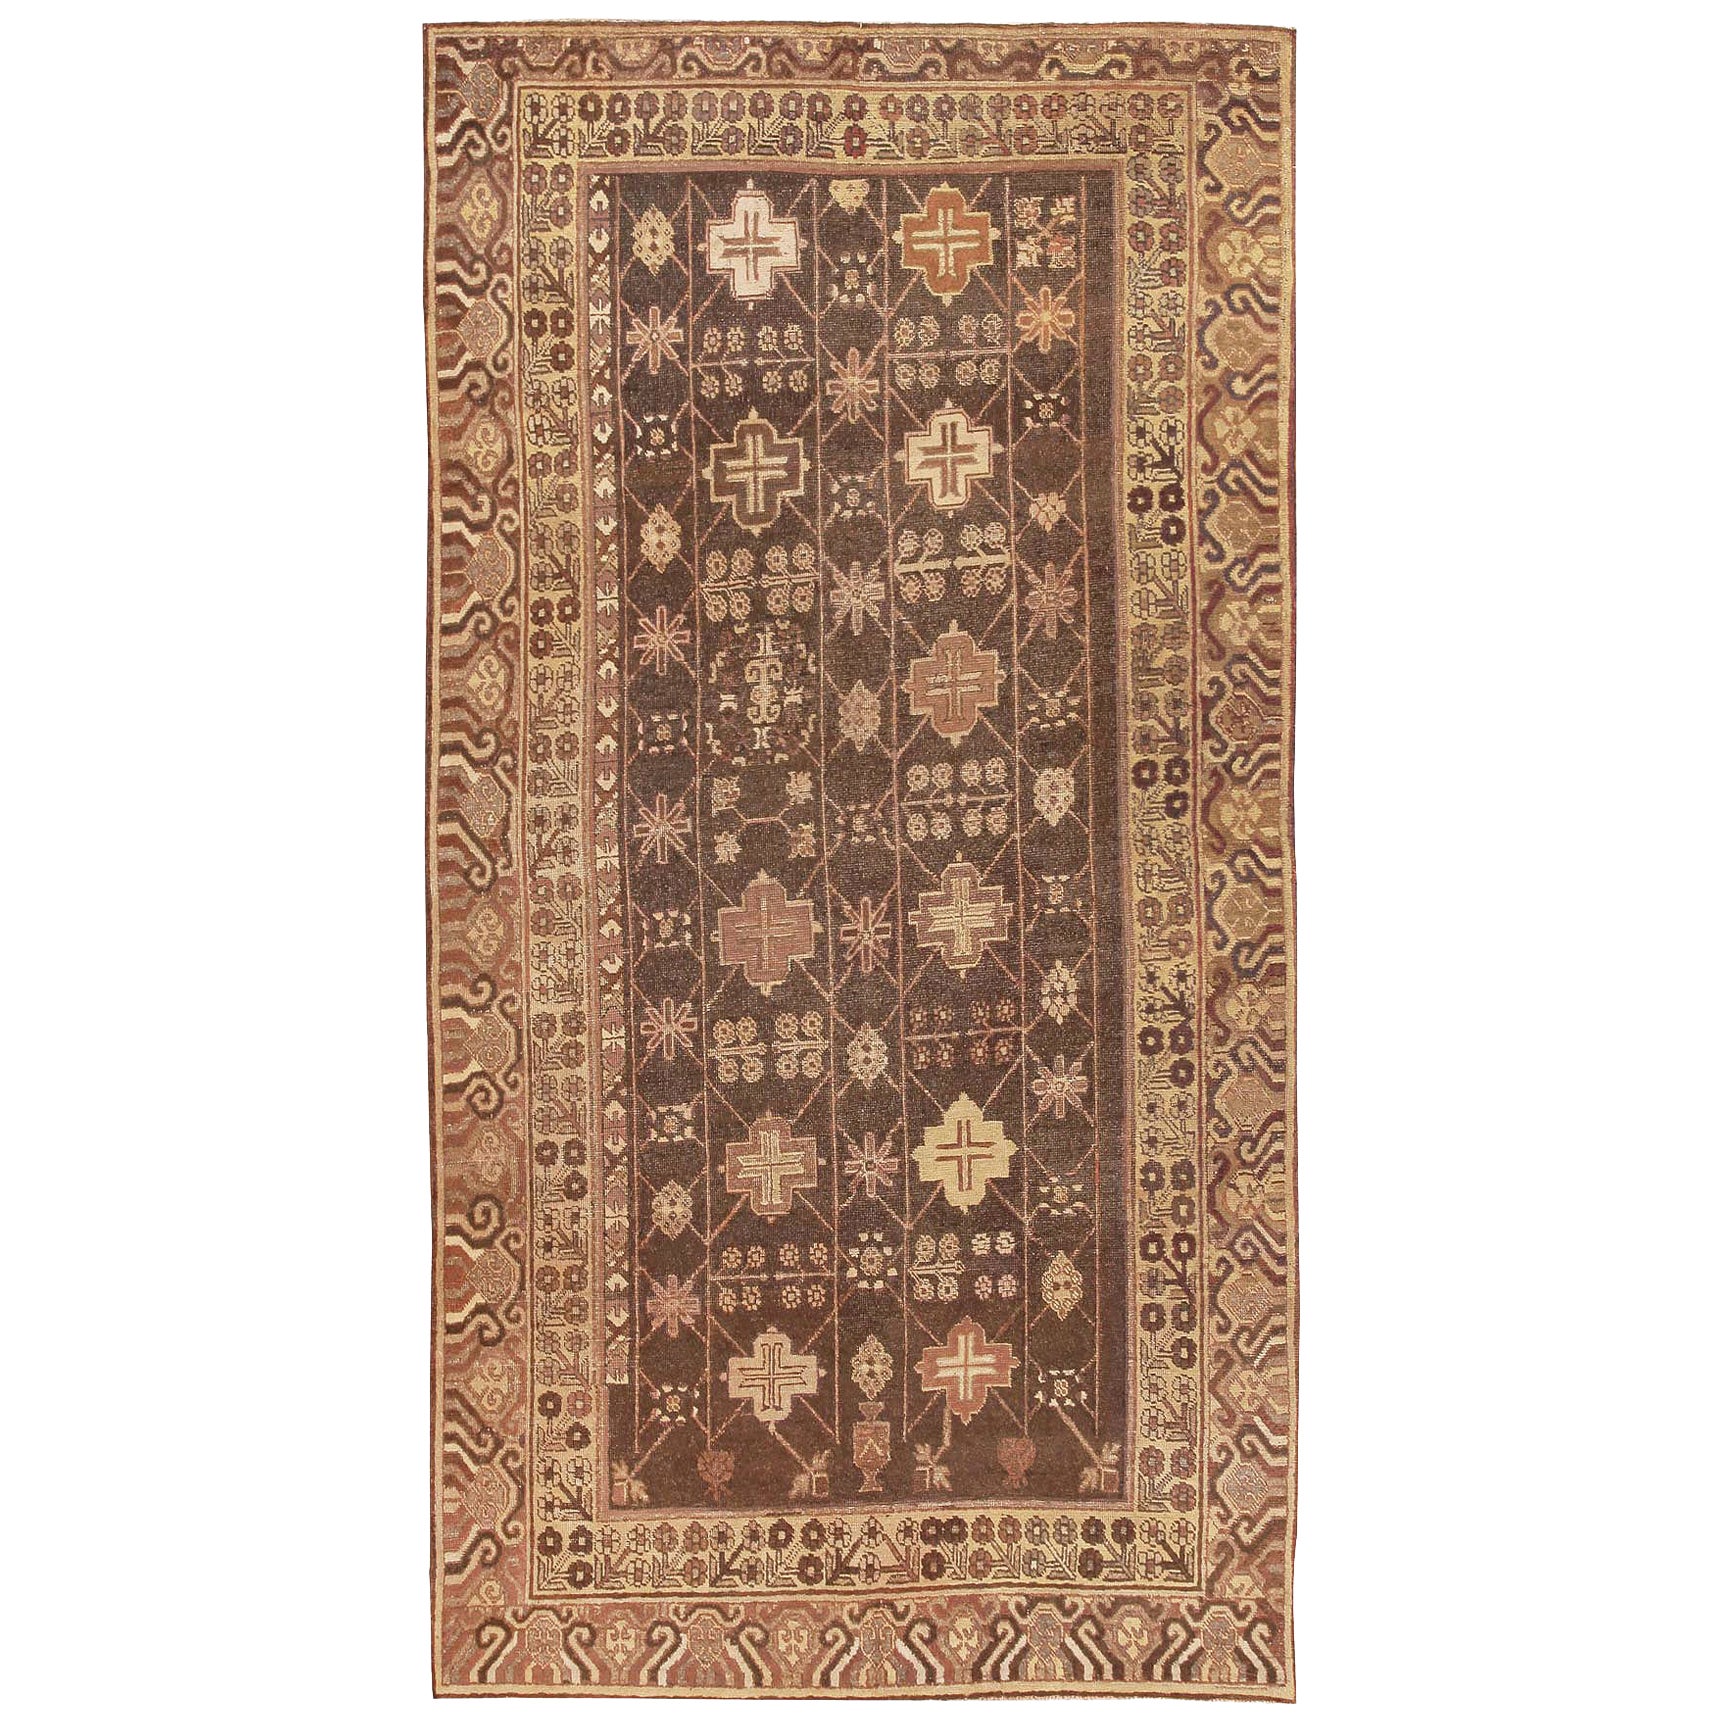 Antiker Khotan-Teppich. Größe: 5 ft 1 in x 10 ft 3 in 